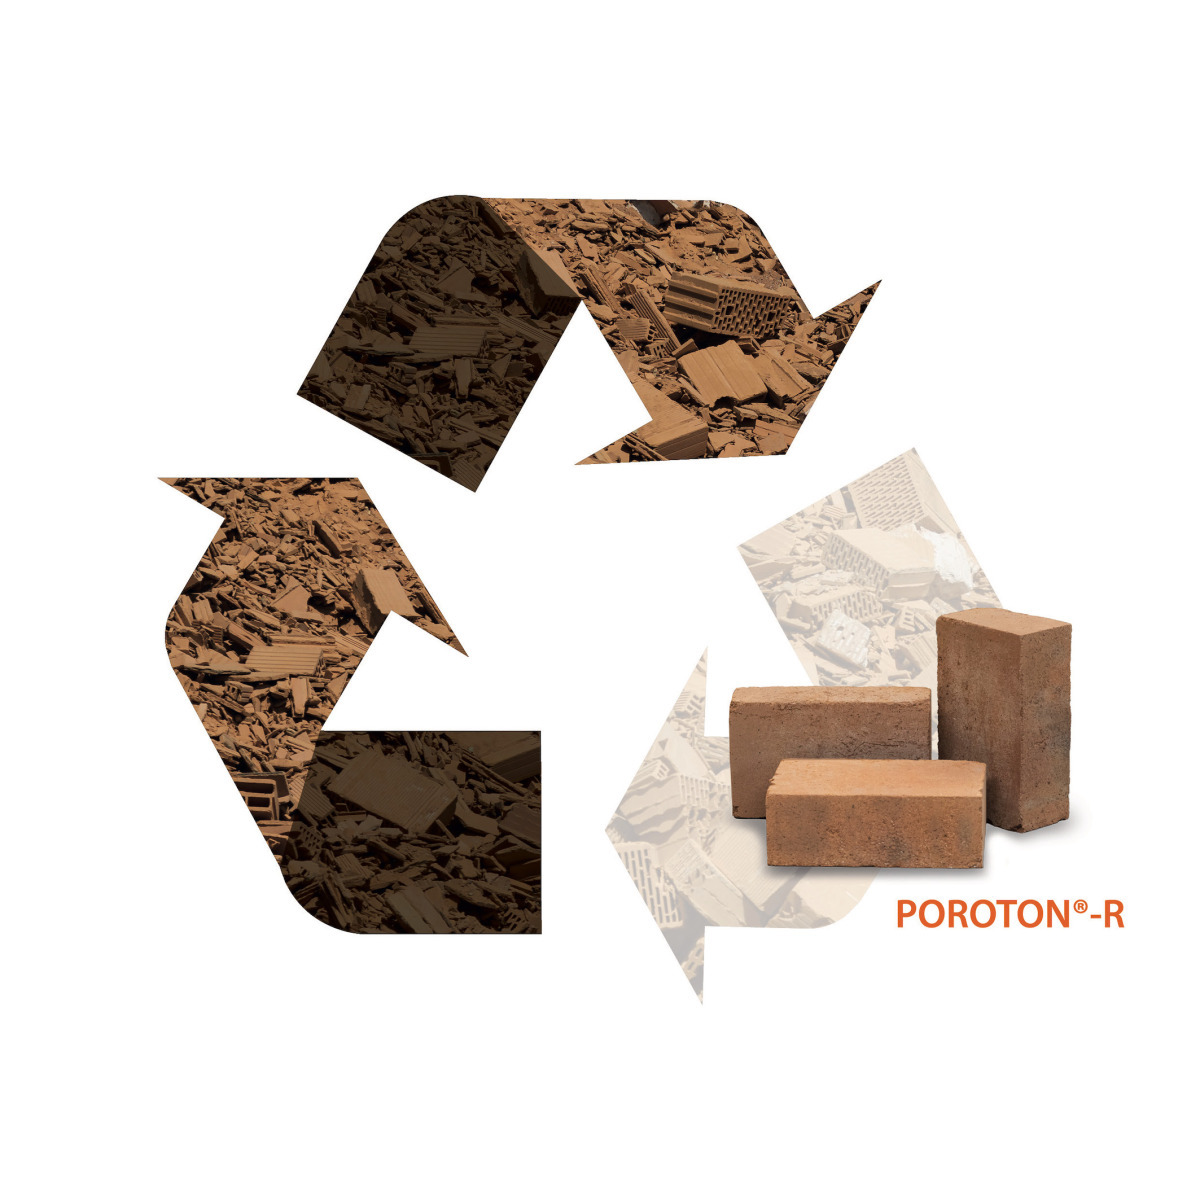 Der Poroton-R ist ein Recycling-Ziegel, der aus recycelten und wiederaufbereiteten Ziegeln und rein keramisch ohne ein zusätzliches, künstliches Bindemittel geformt wird.